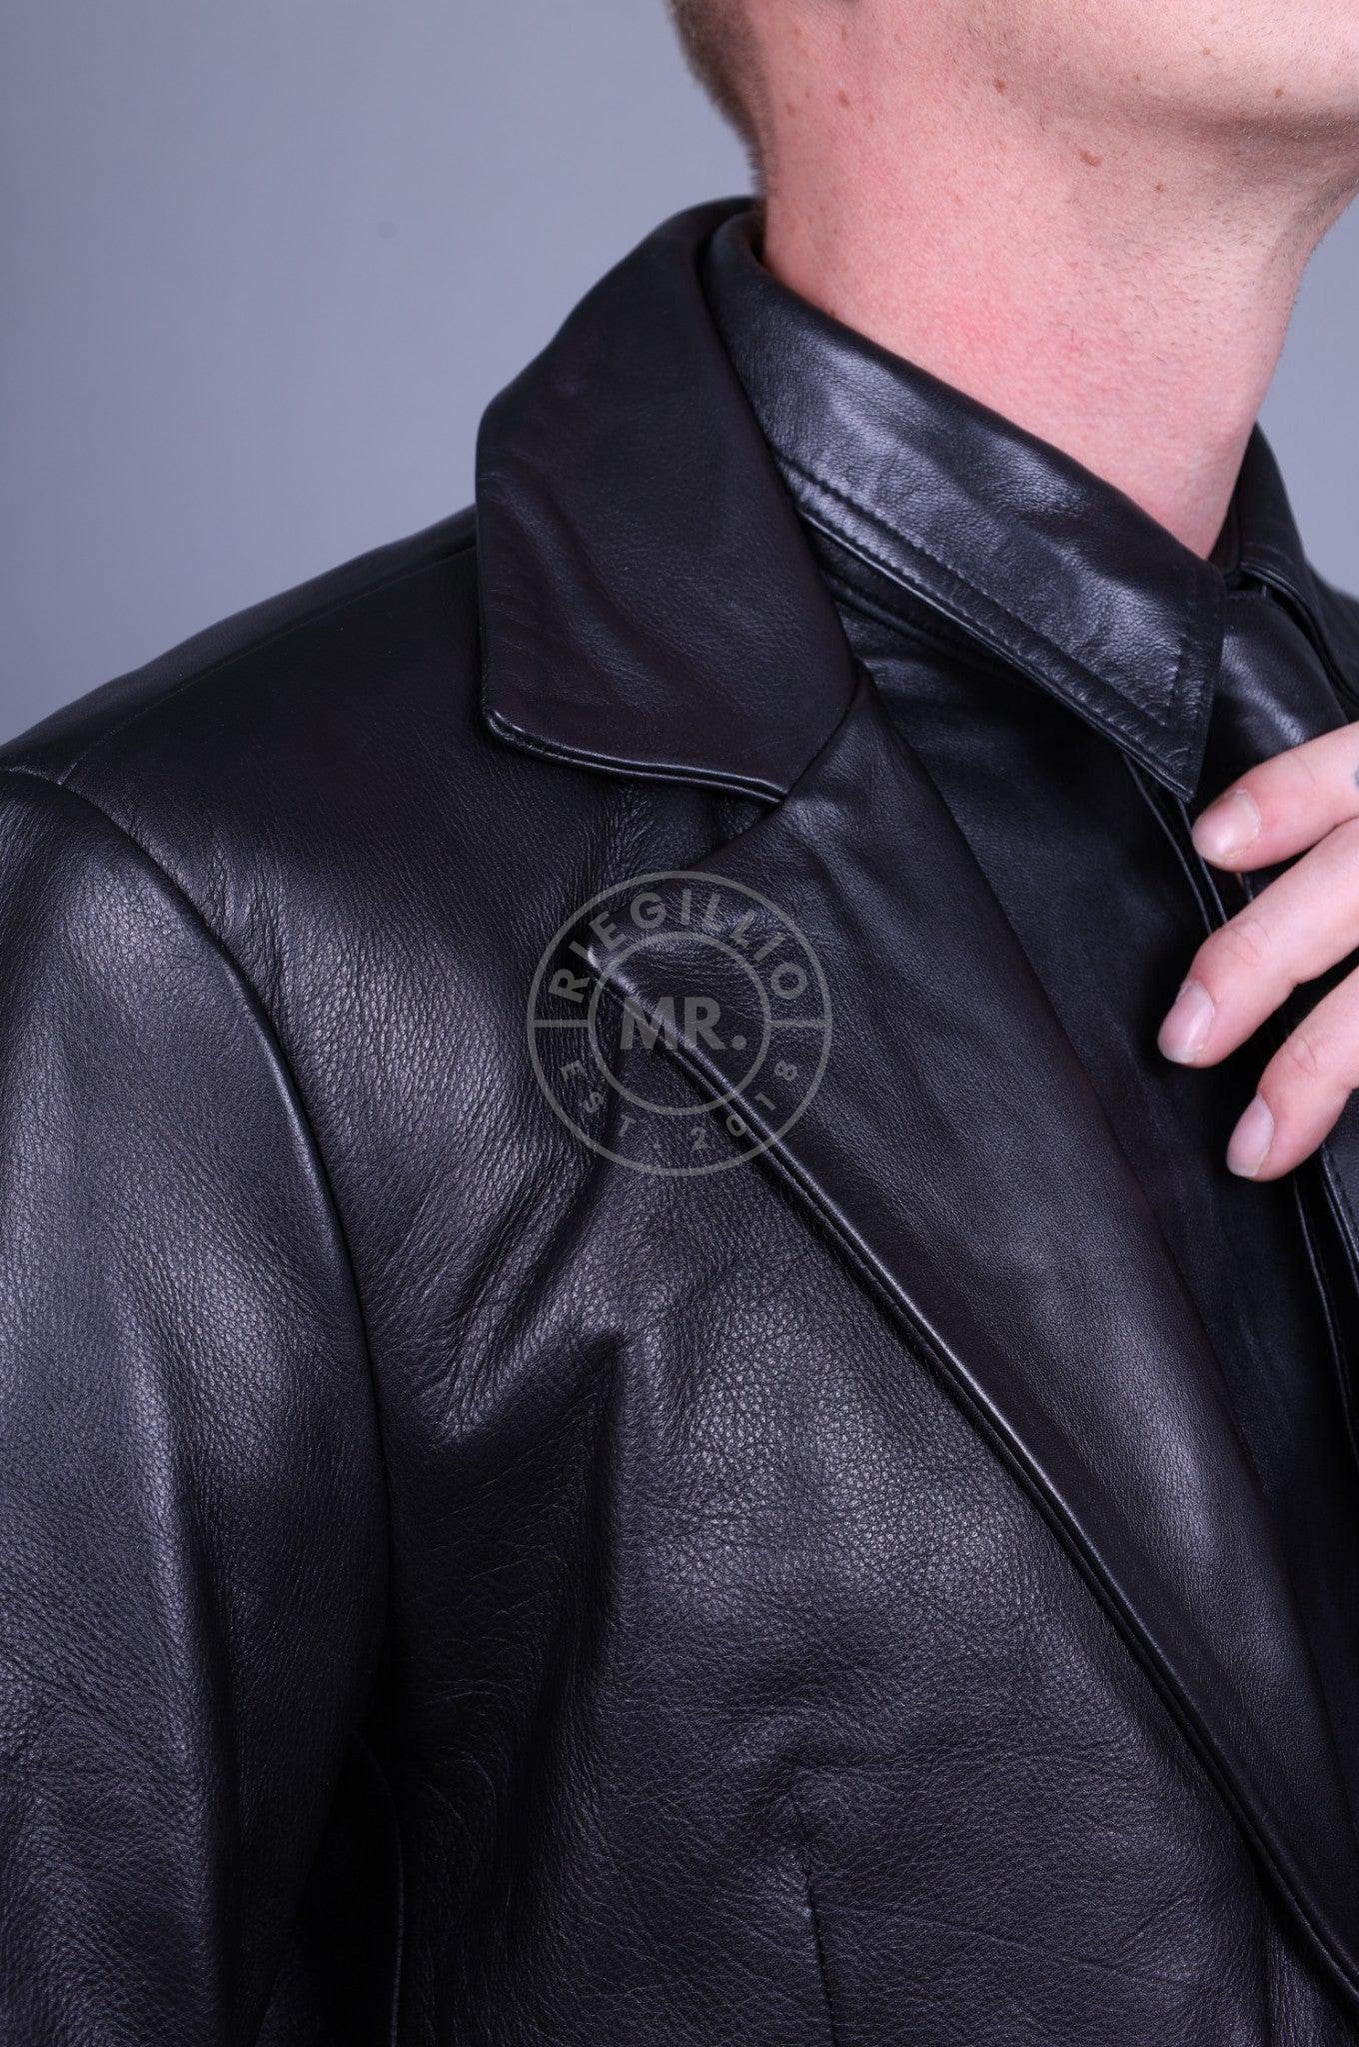 Black Leather Blazer-at MR. Riegillio